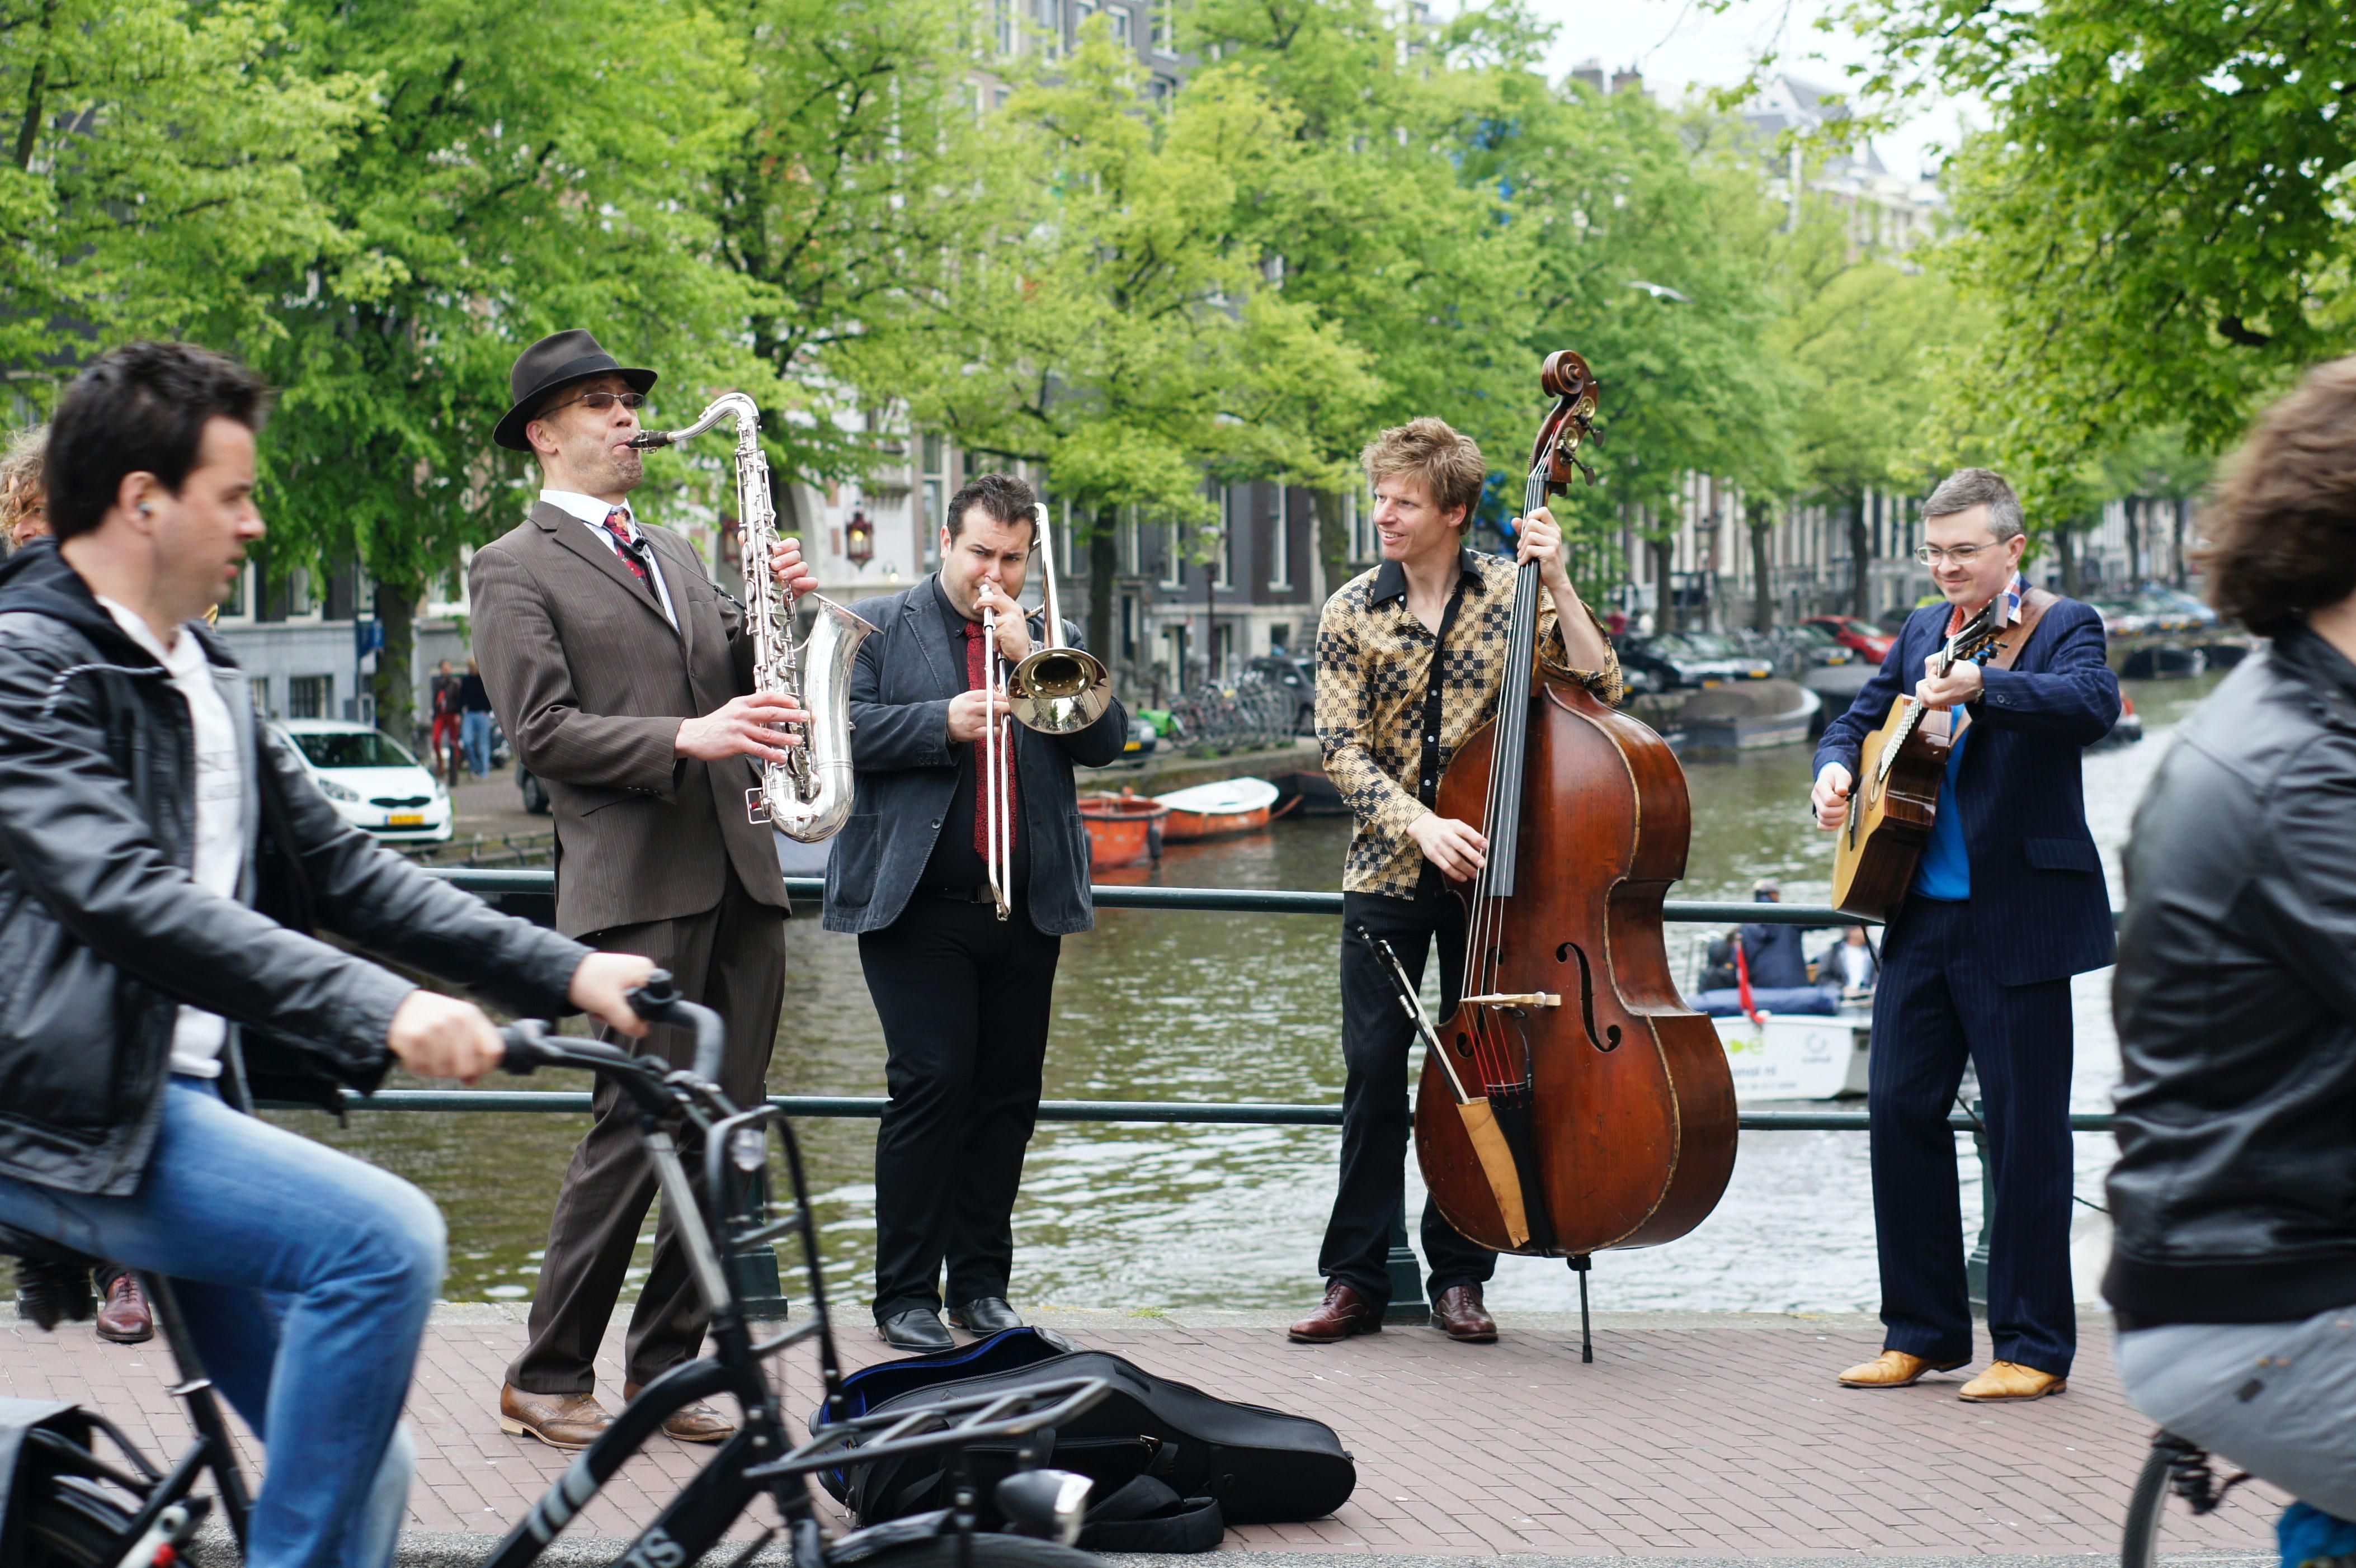 Utcai zenészek zenélnek az utcán, akik a Songlorius segítségével már esküvői dalokat is árulhatnak